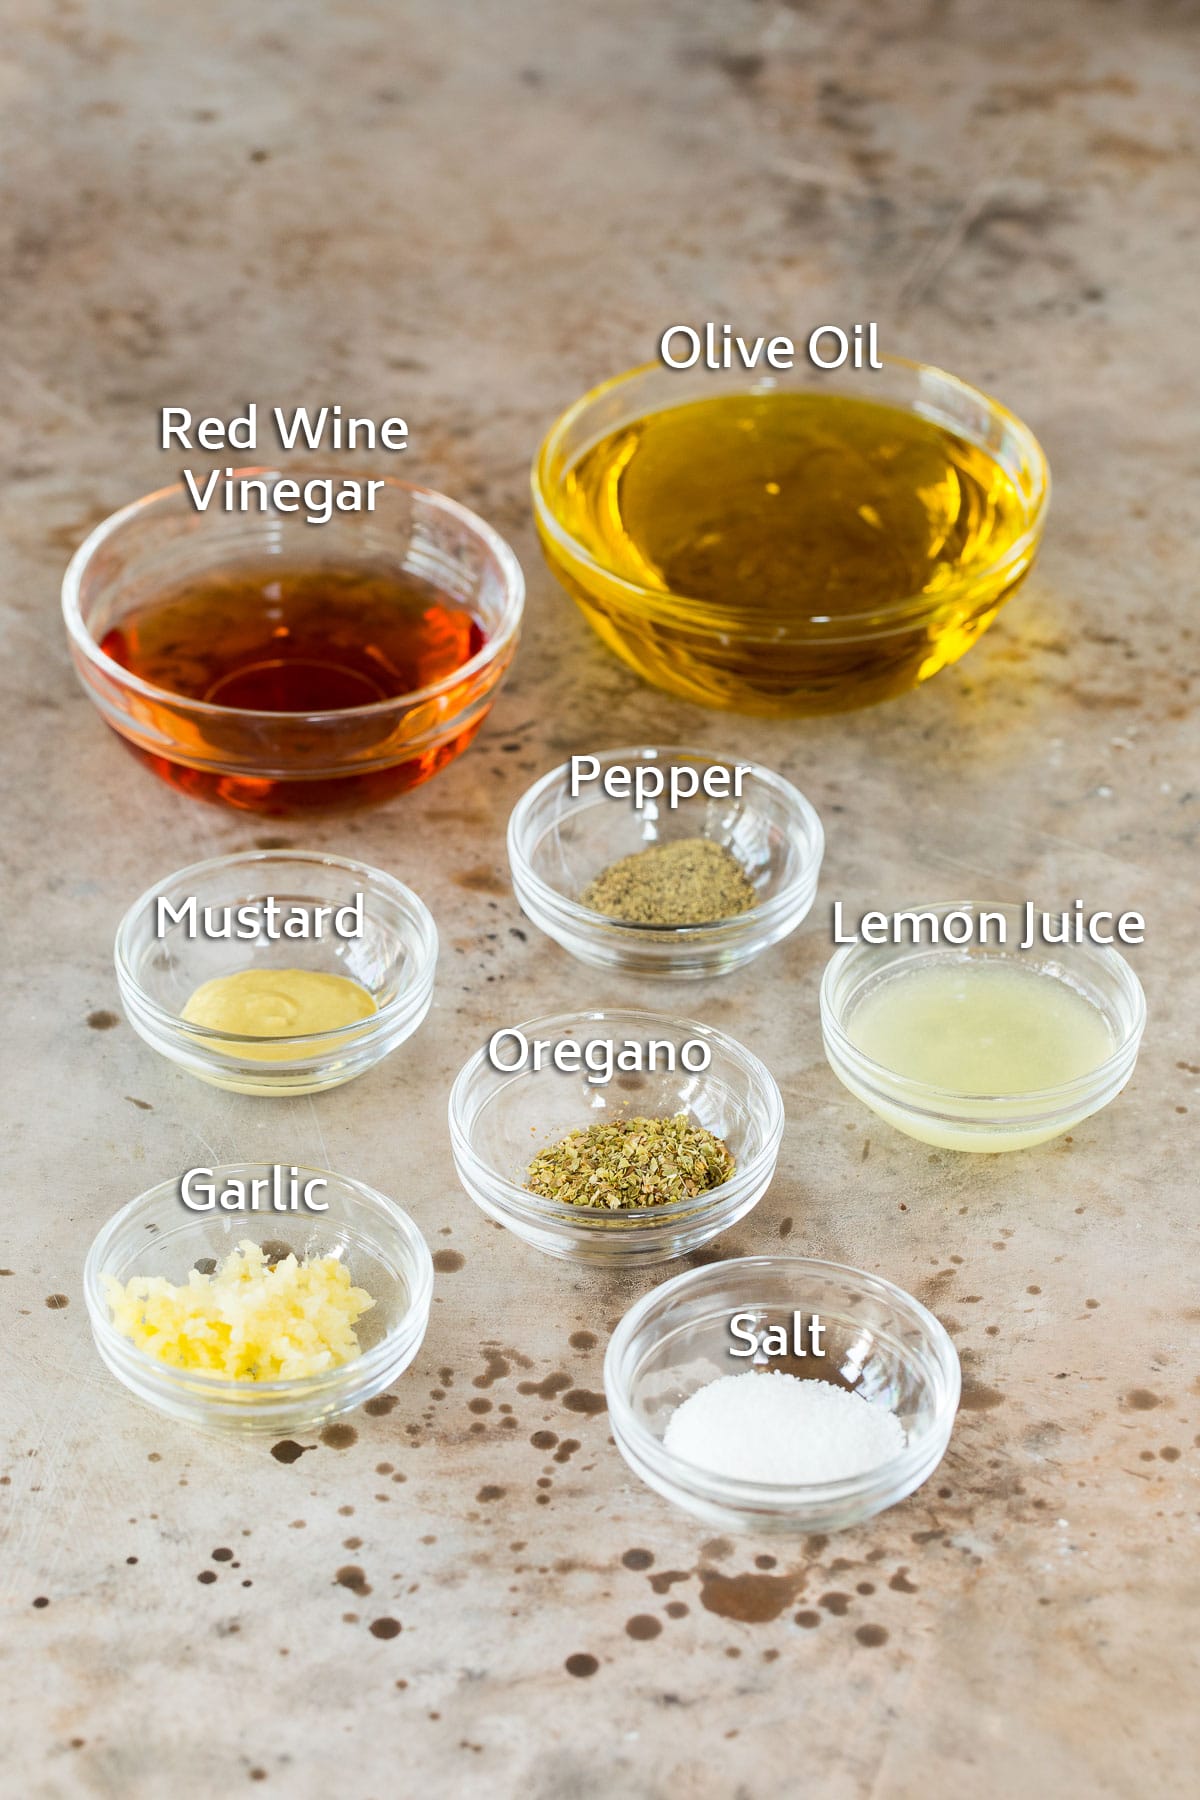 Bowls of ingredients including olive oil, vinegar, lemon juice and seasonings.